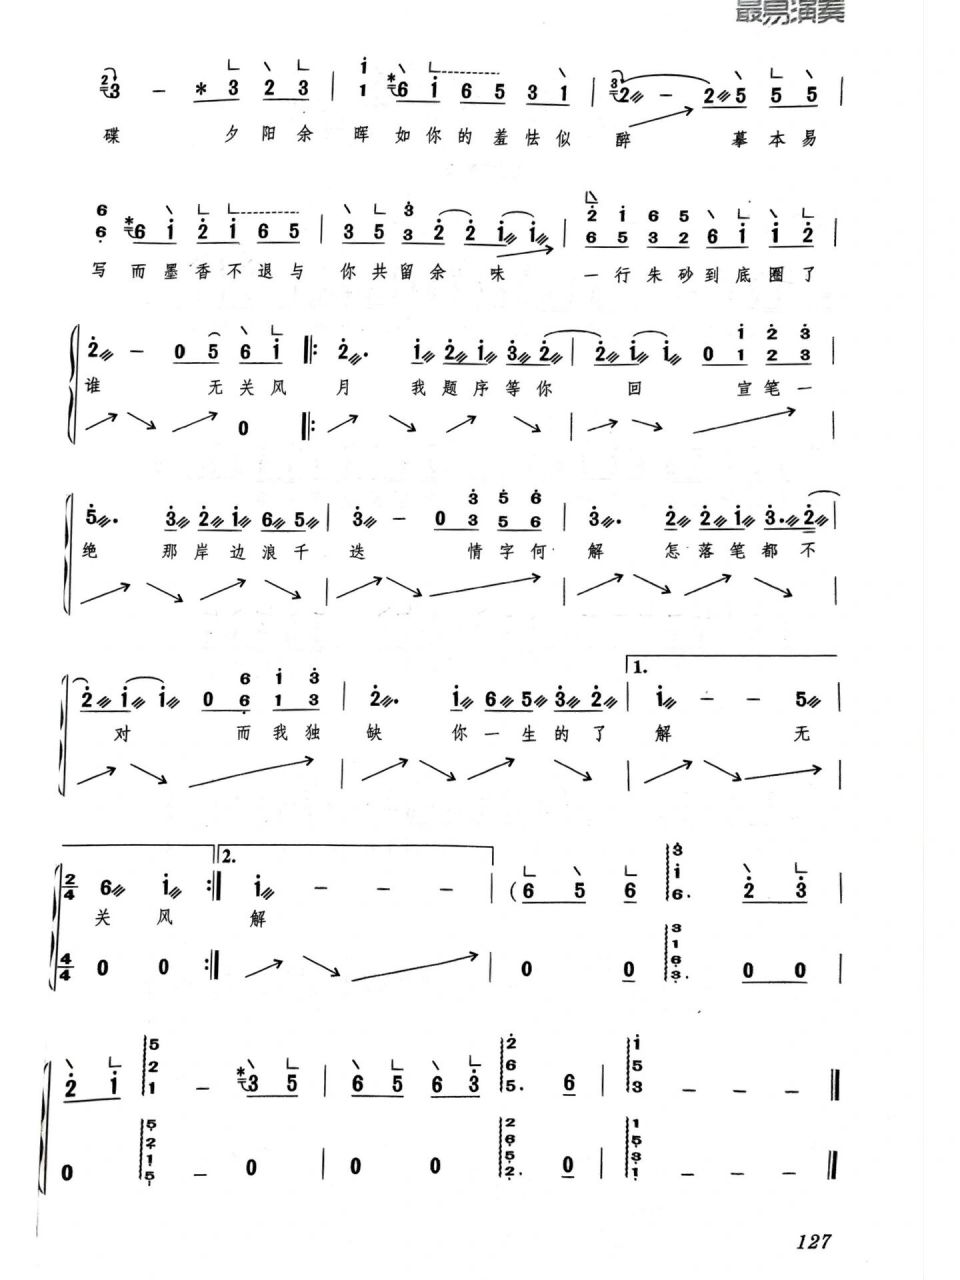 兰亭序 完整版 古筝曲谱 超好听的古风歌曲 学起来